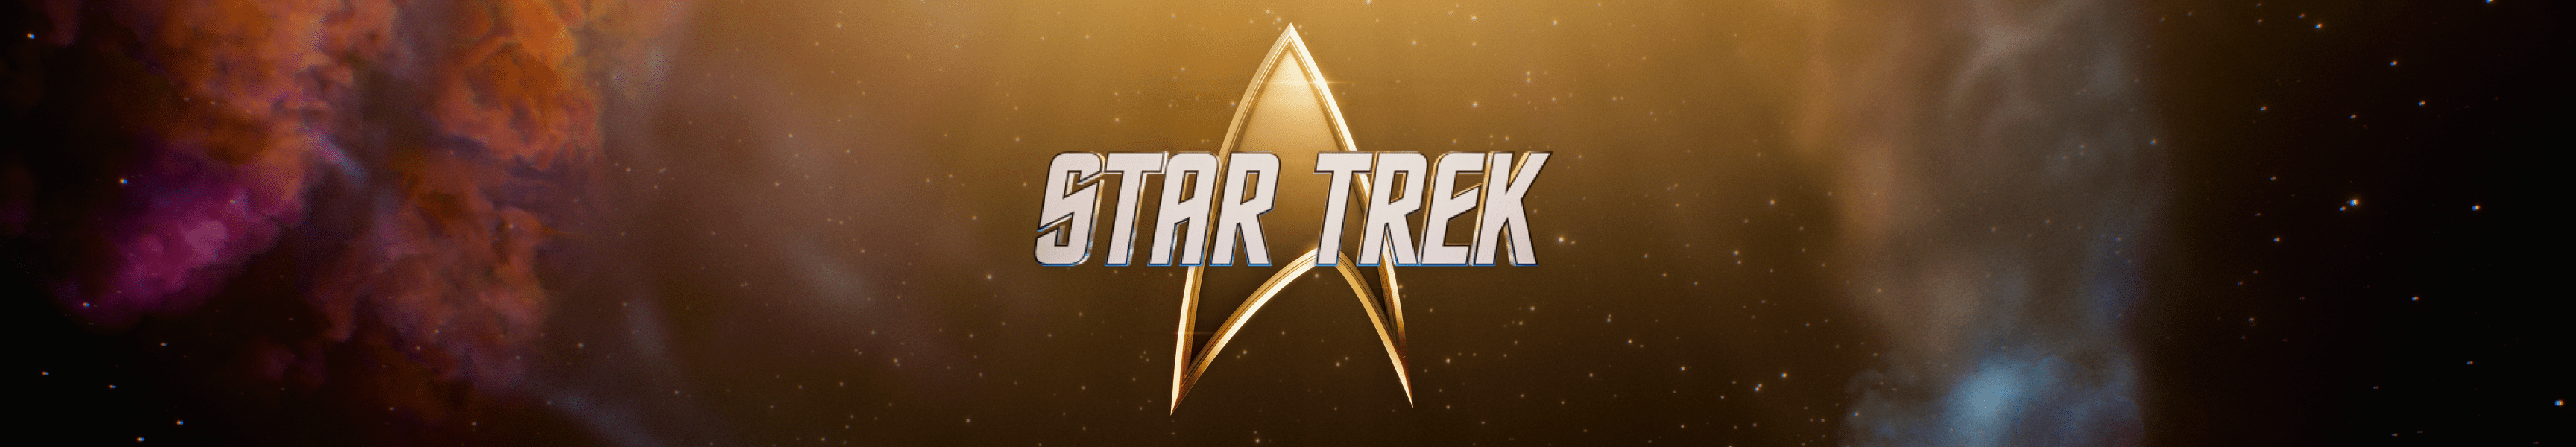 Nuestro regalo para usted: Descuento en Star Trek Mercancía